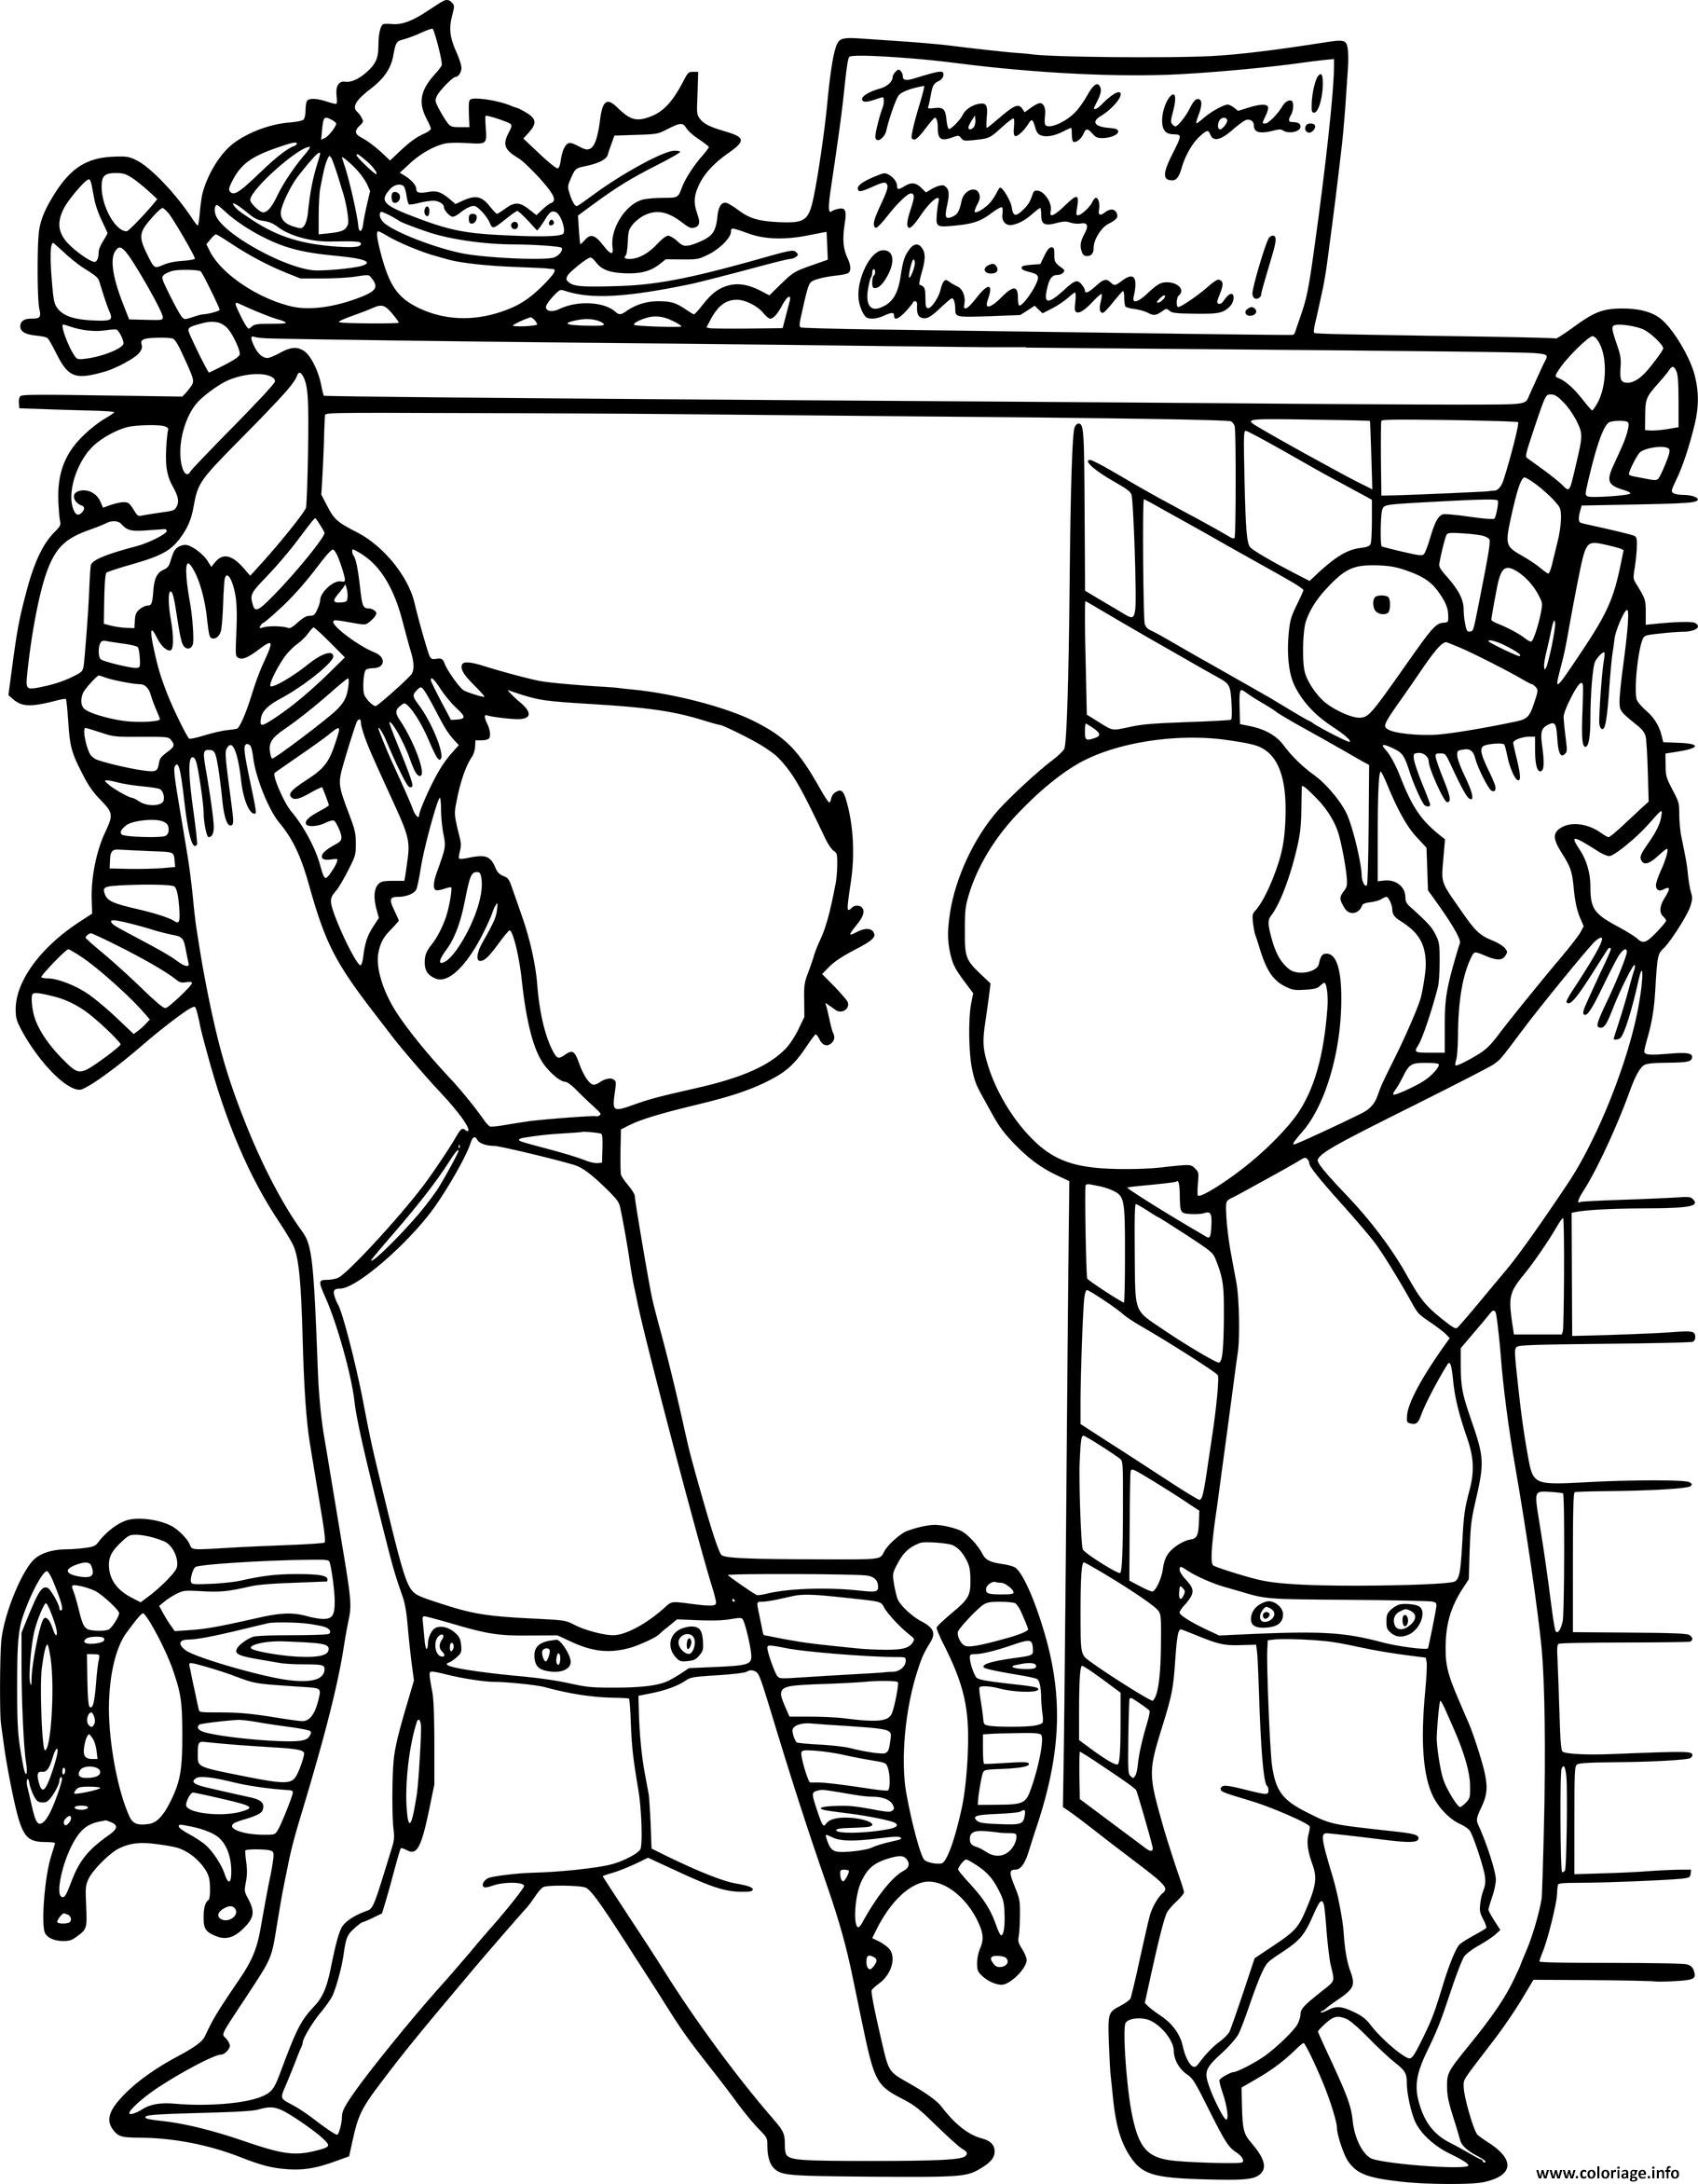 Dessin deux petits enfants accrochent des bas de noel sur la cheminee Coloriage Gratuit à Imprimer